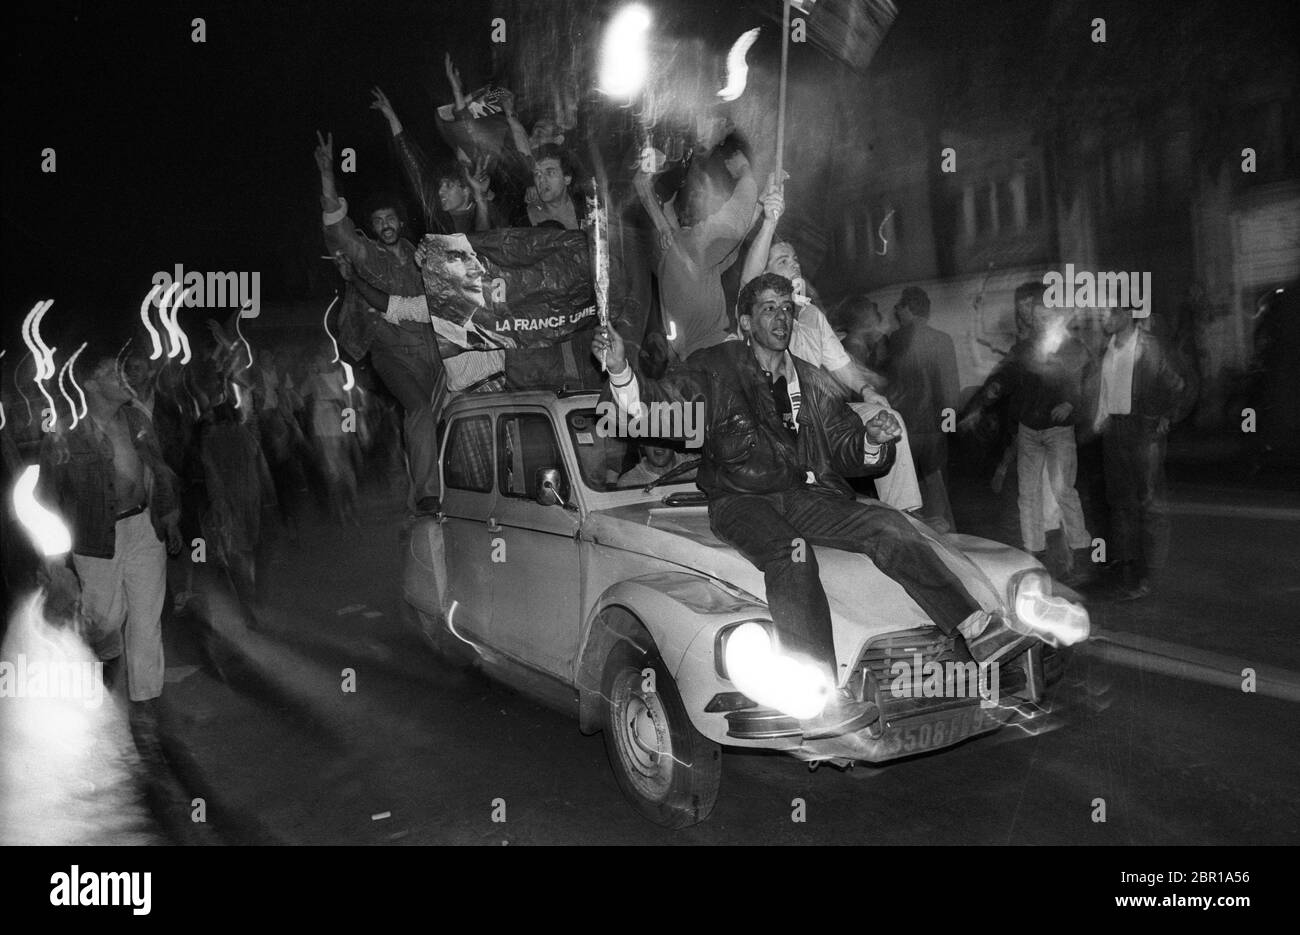 Élections françaises 1988. Les partisans de François Mitterrand célèbrent sa victoire présidentielle pour le Parti socialiste à la place de la République à Paris 1988 Banque D'Images